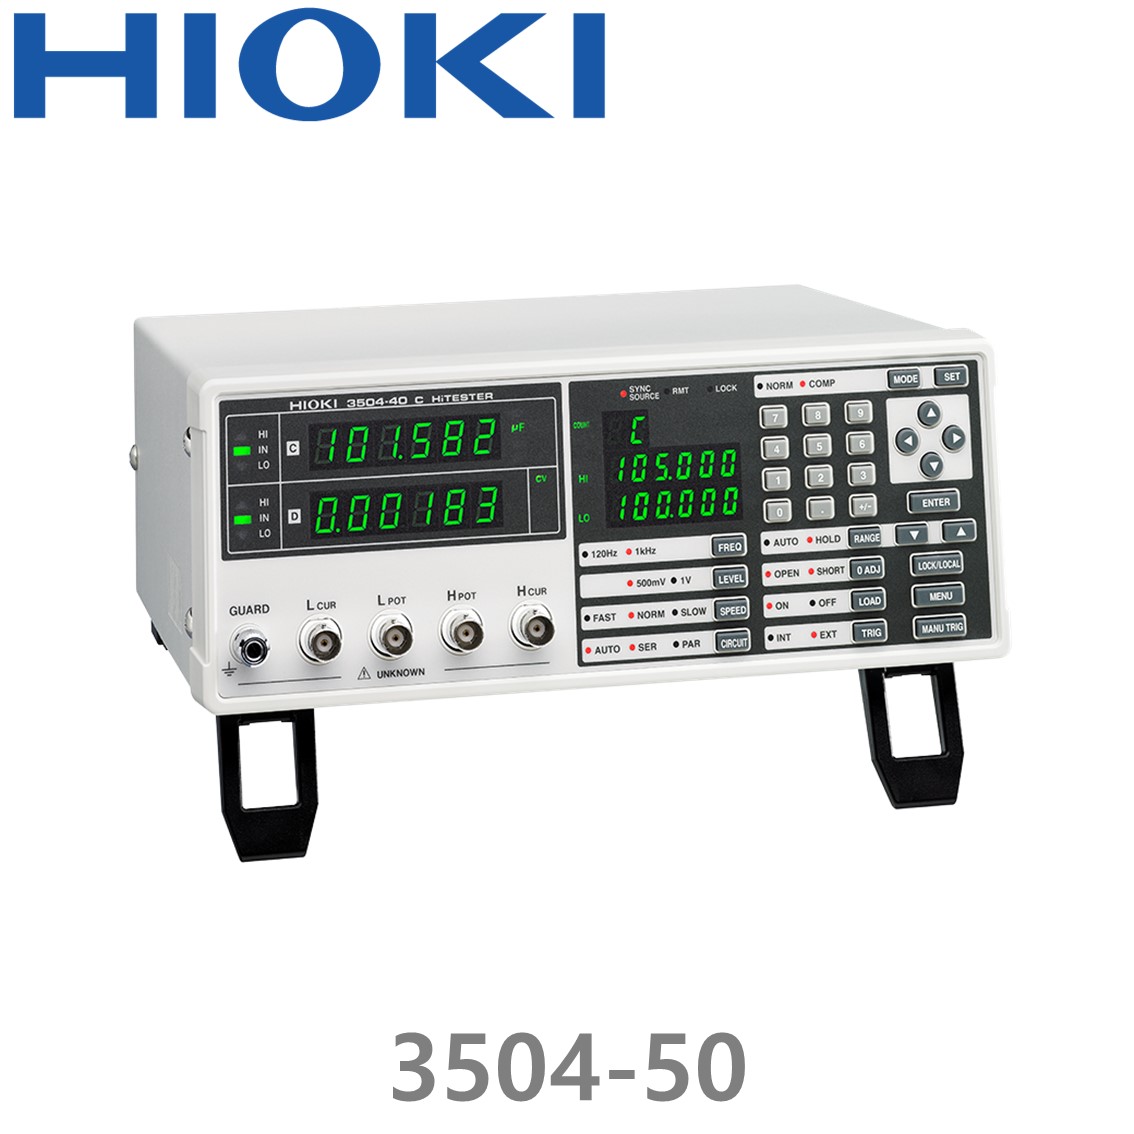 [ HIOKI ] 3504-50 C 하이테스터, Capacitance Meter, GPIB, RS-232C